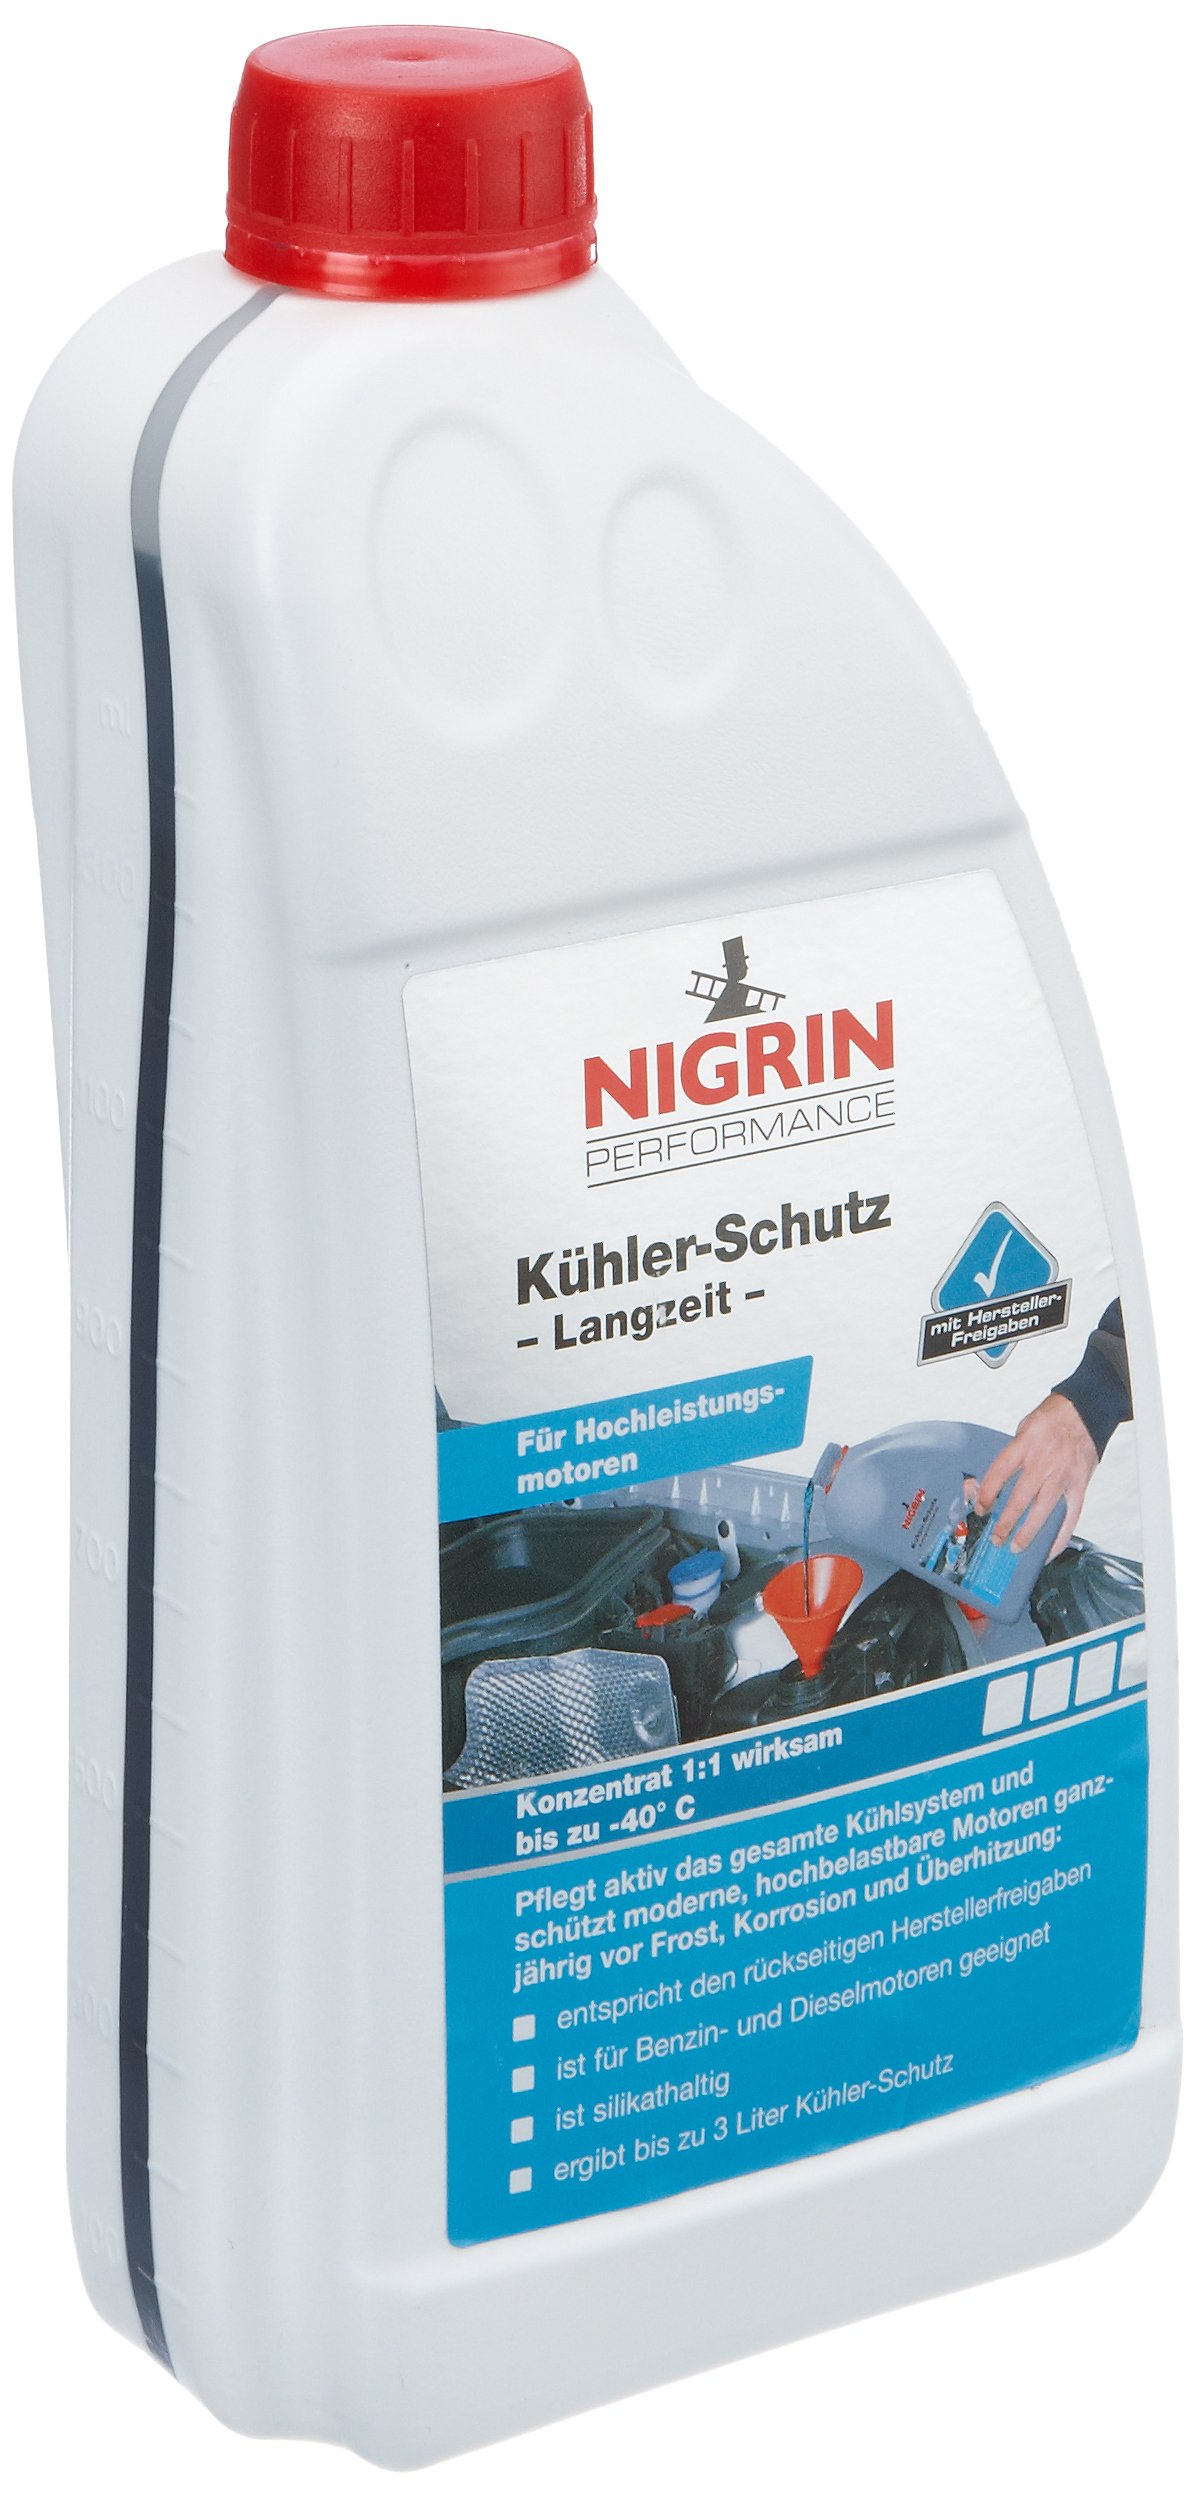 Nigrin 73930 Kühler-Schutz Premium Plus, 1,5l von NIGRIN